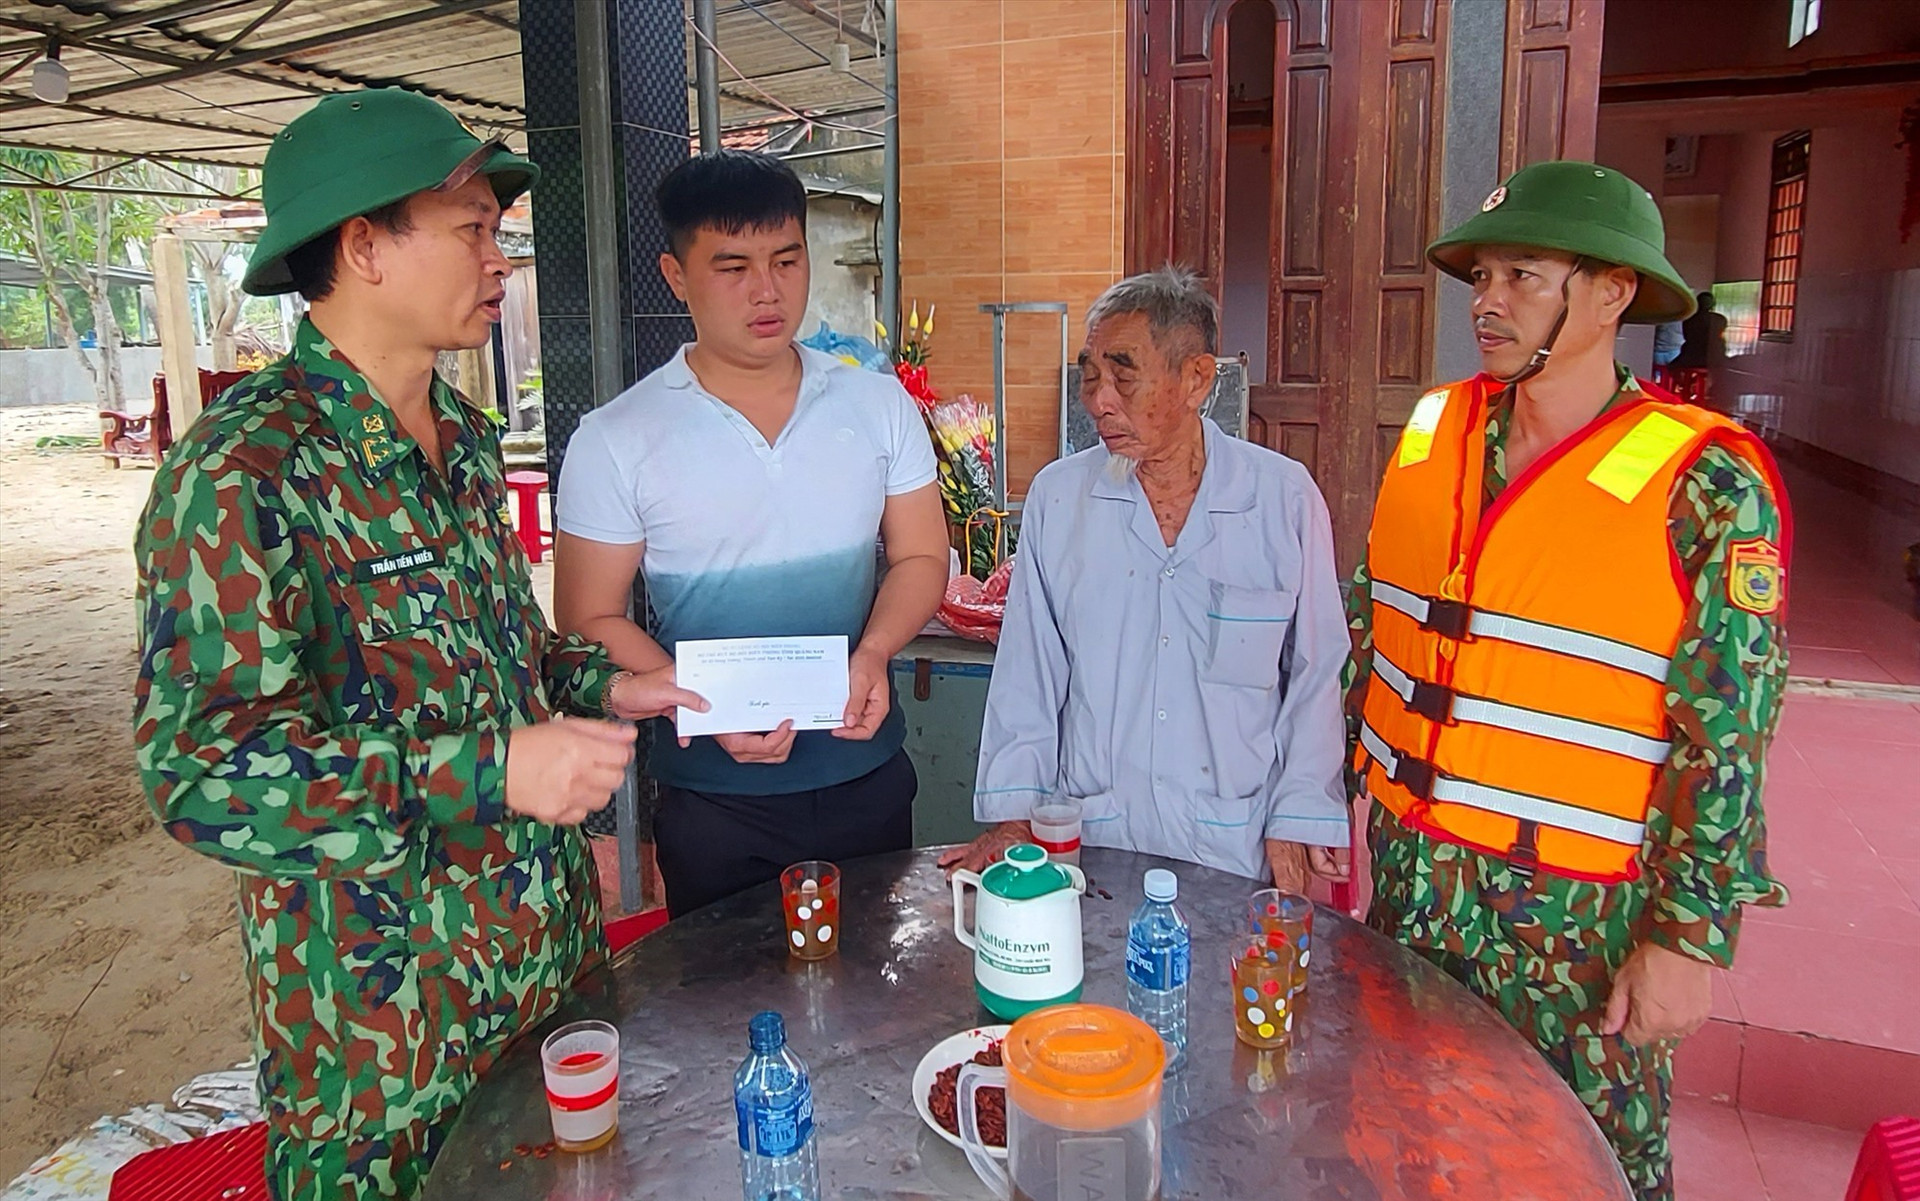 Đại tá Trần Tiến Hiền – Phó Chỉ huy trưởng BĐBP tỉnh trao tiền hỗ trợ cho gia đình ông Nguyễn Diệp. Ảnh: HỒNG ANH